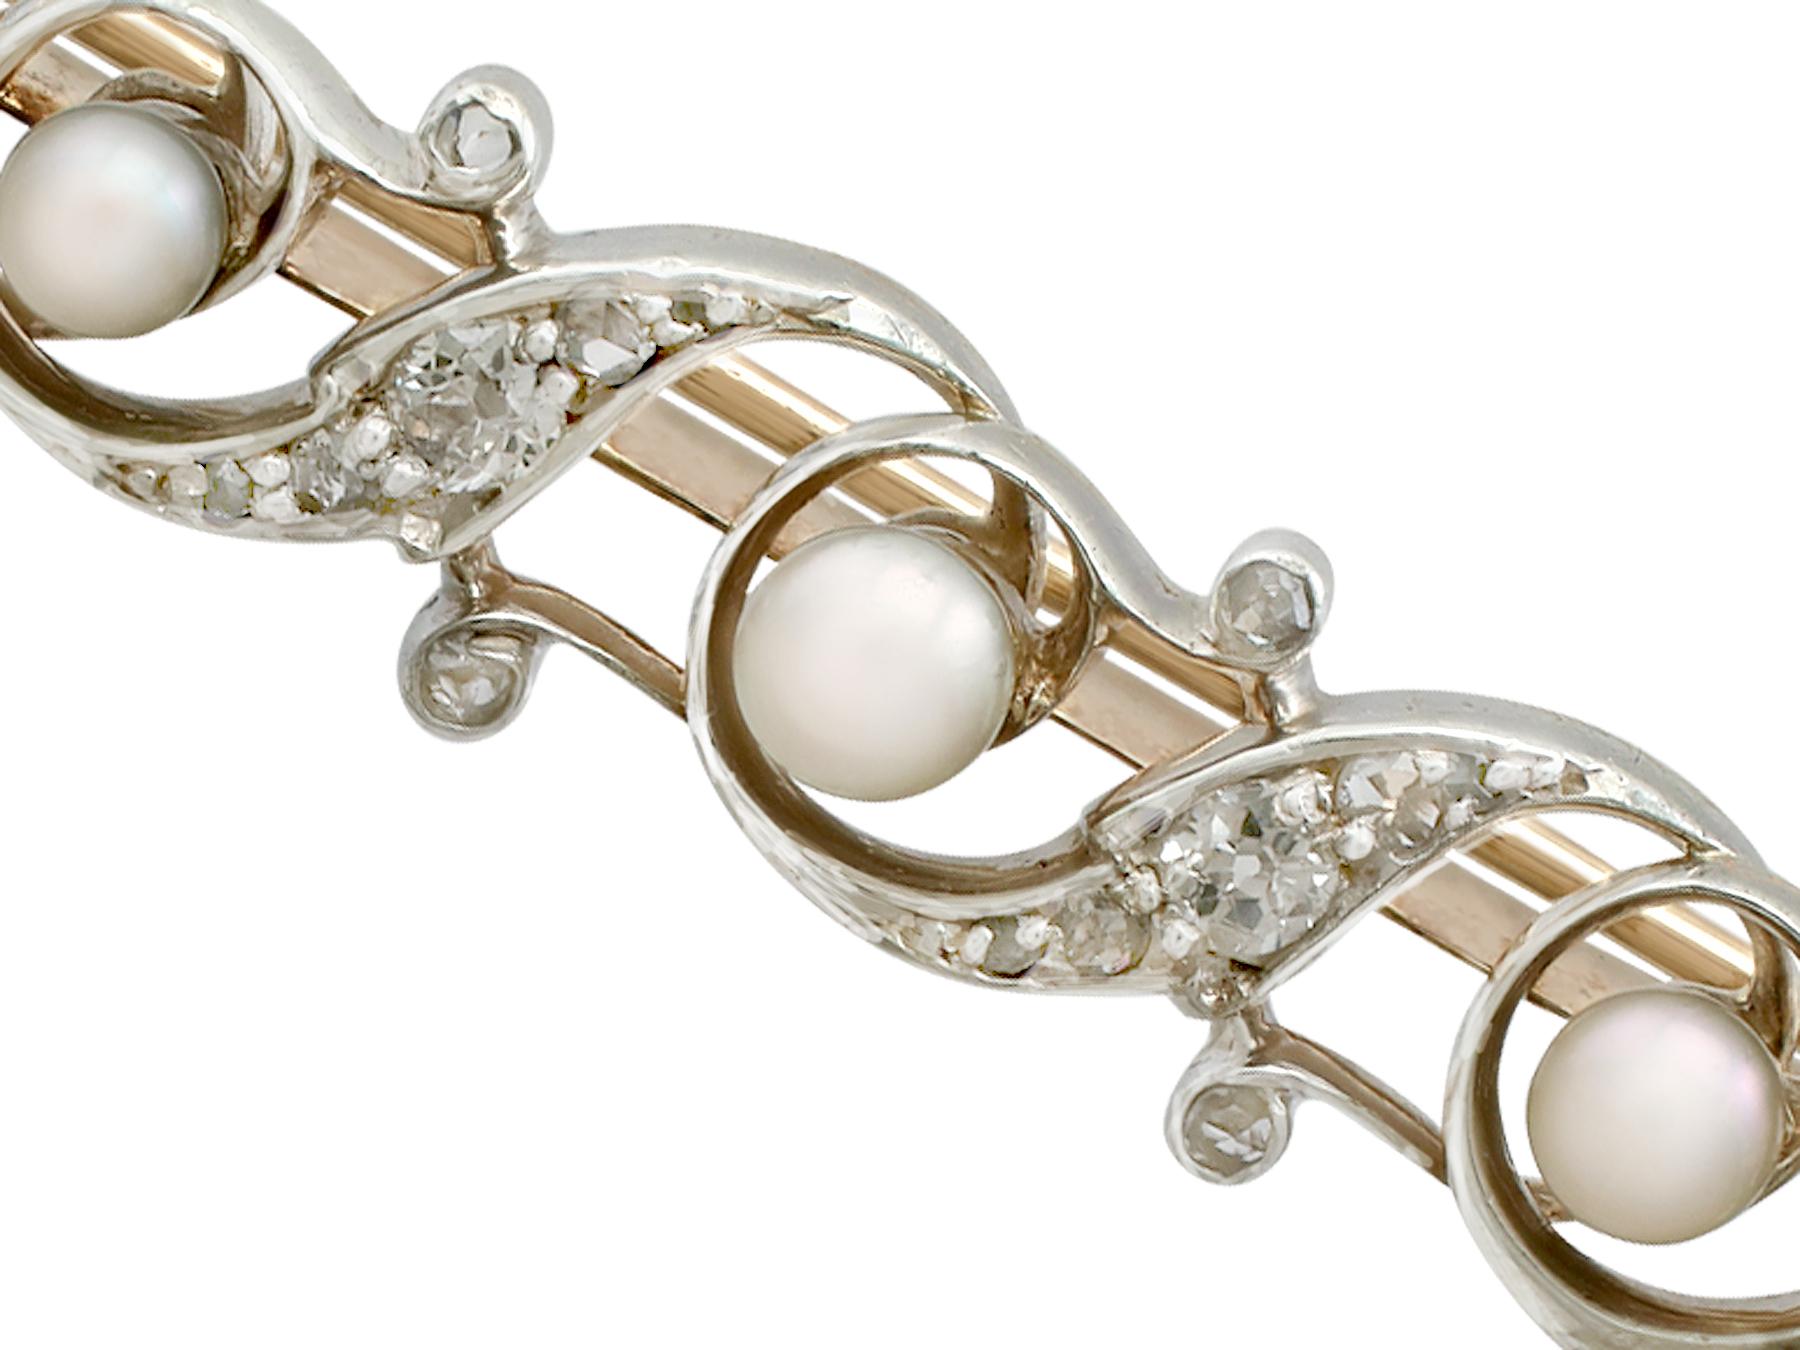 Eine beeindruckende antike Perle und 0,75 Karat Diamanten, 9 Karat Gelbgold und Silber gesetzt Bar Brosche; Teil unserer vielfältigen antiken Schmuck und Nachlassschmuck Sammlungen.

Diese feine und beeindruckende antike Perlenbrosche ist aus 9